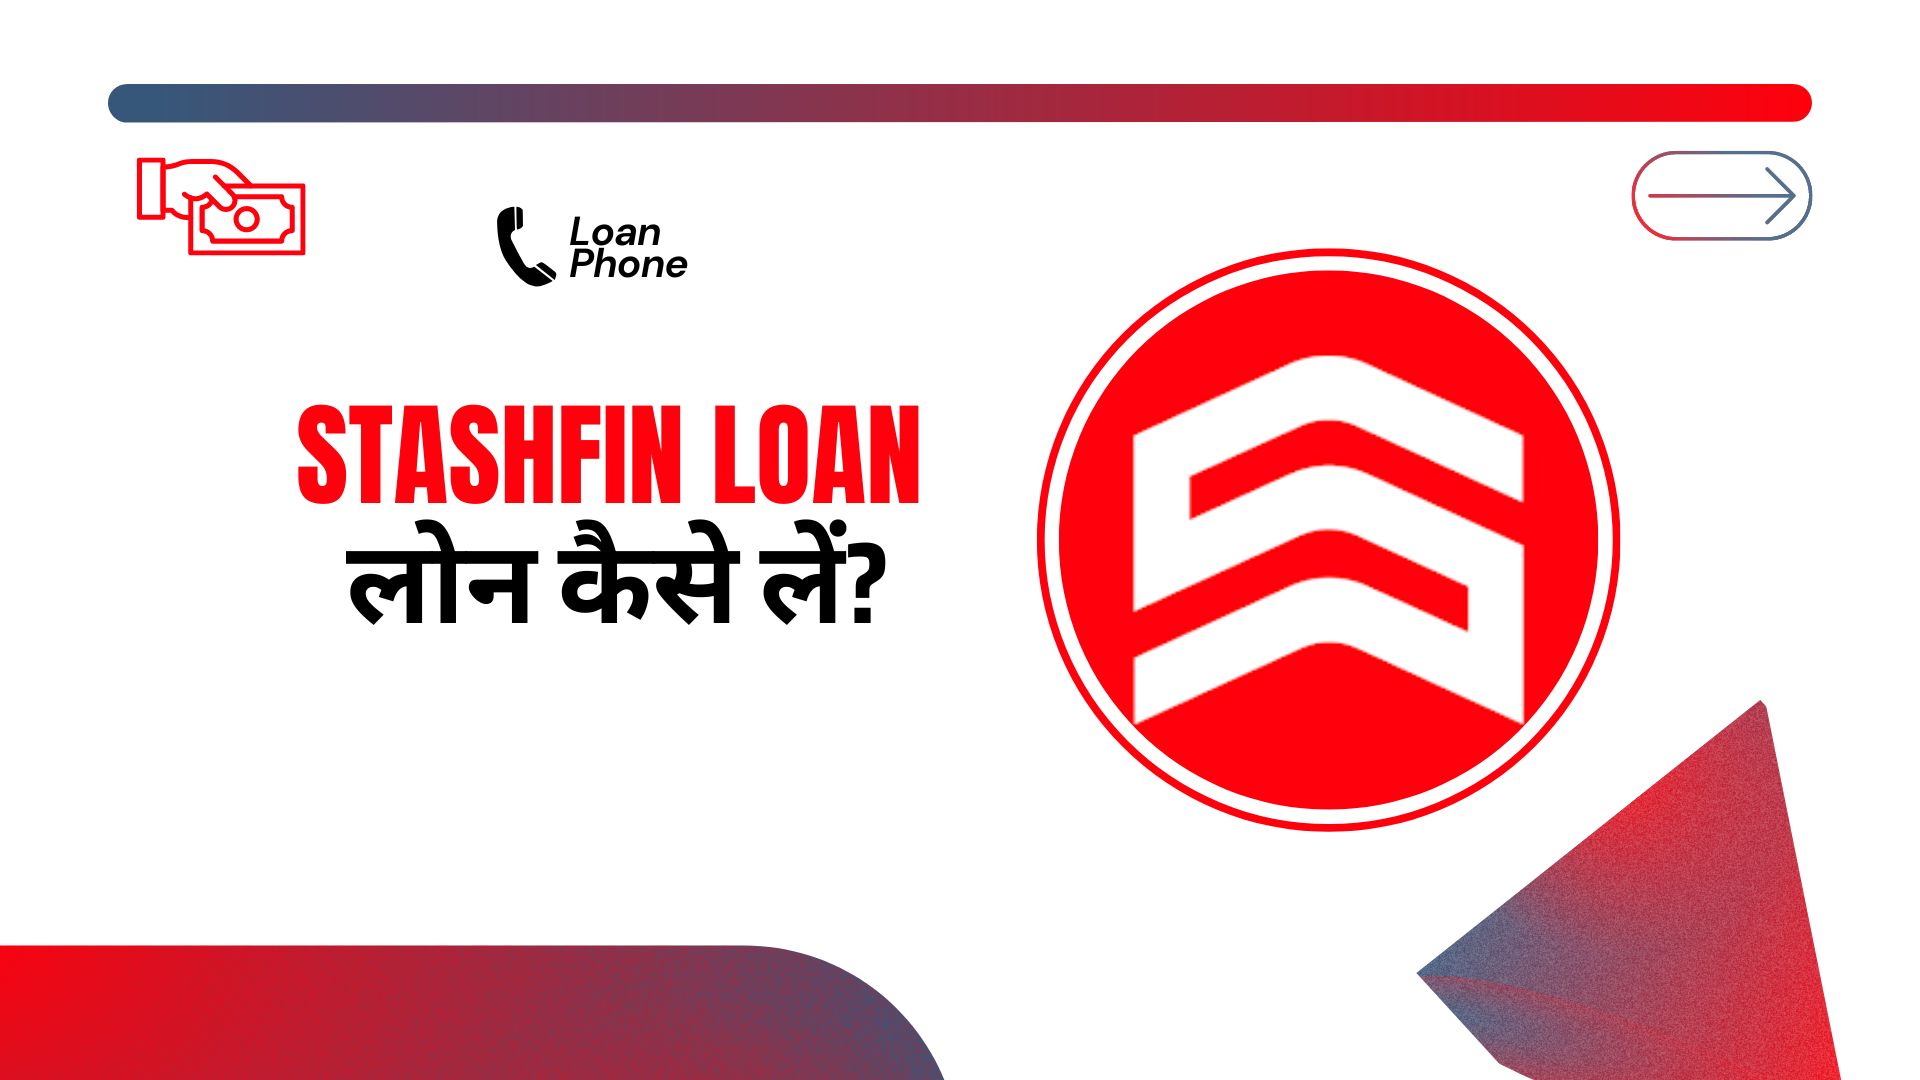 StashFin Loan App से लोन कैसे लें?